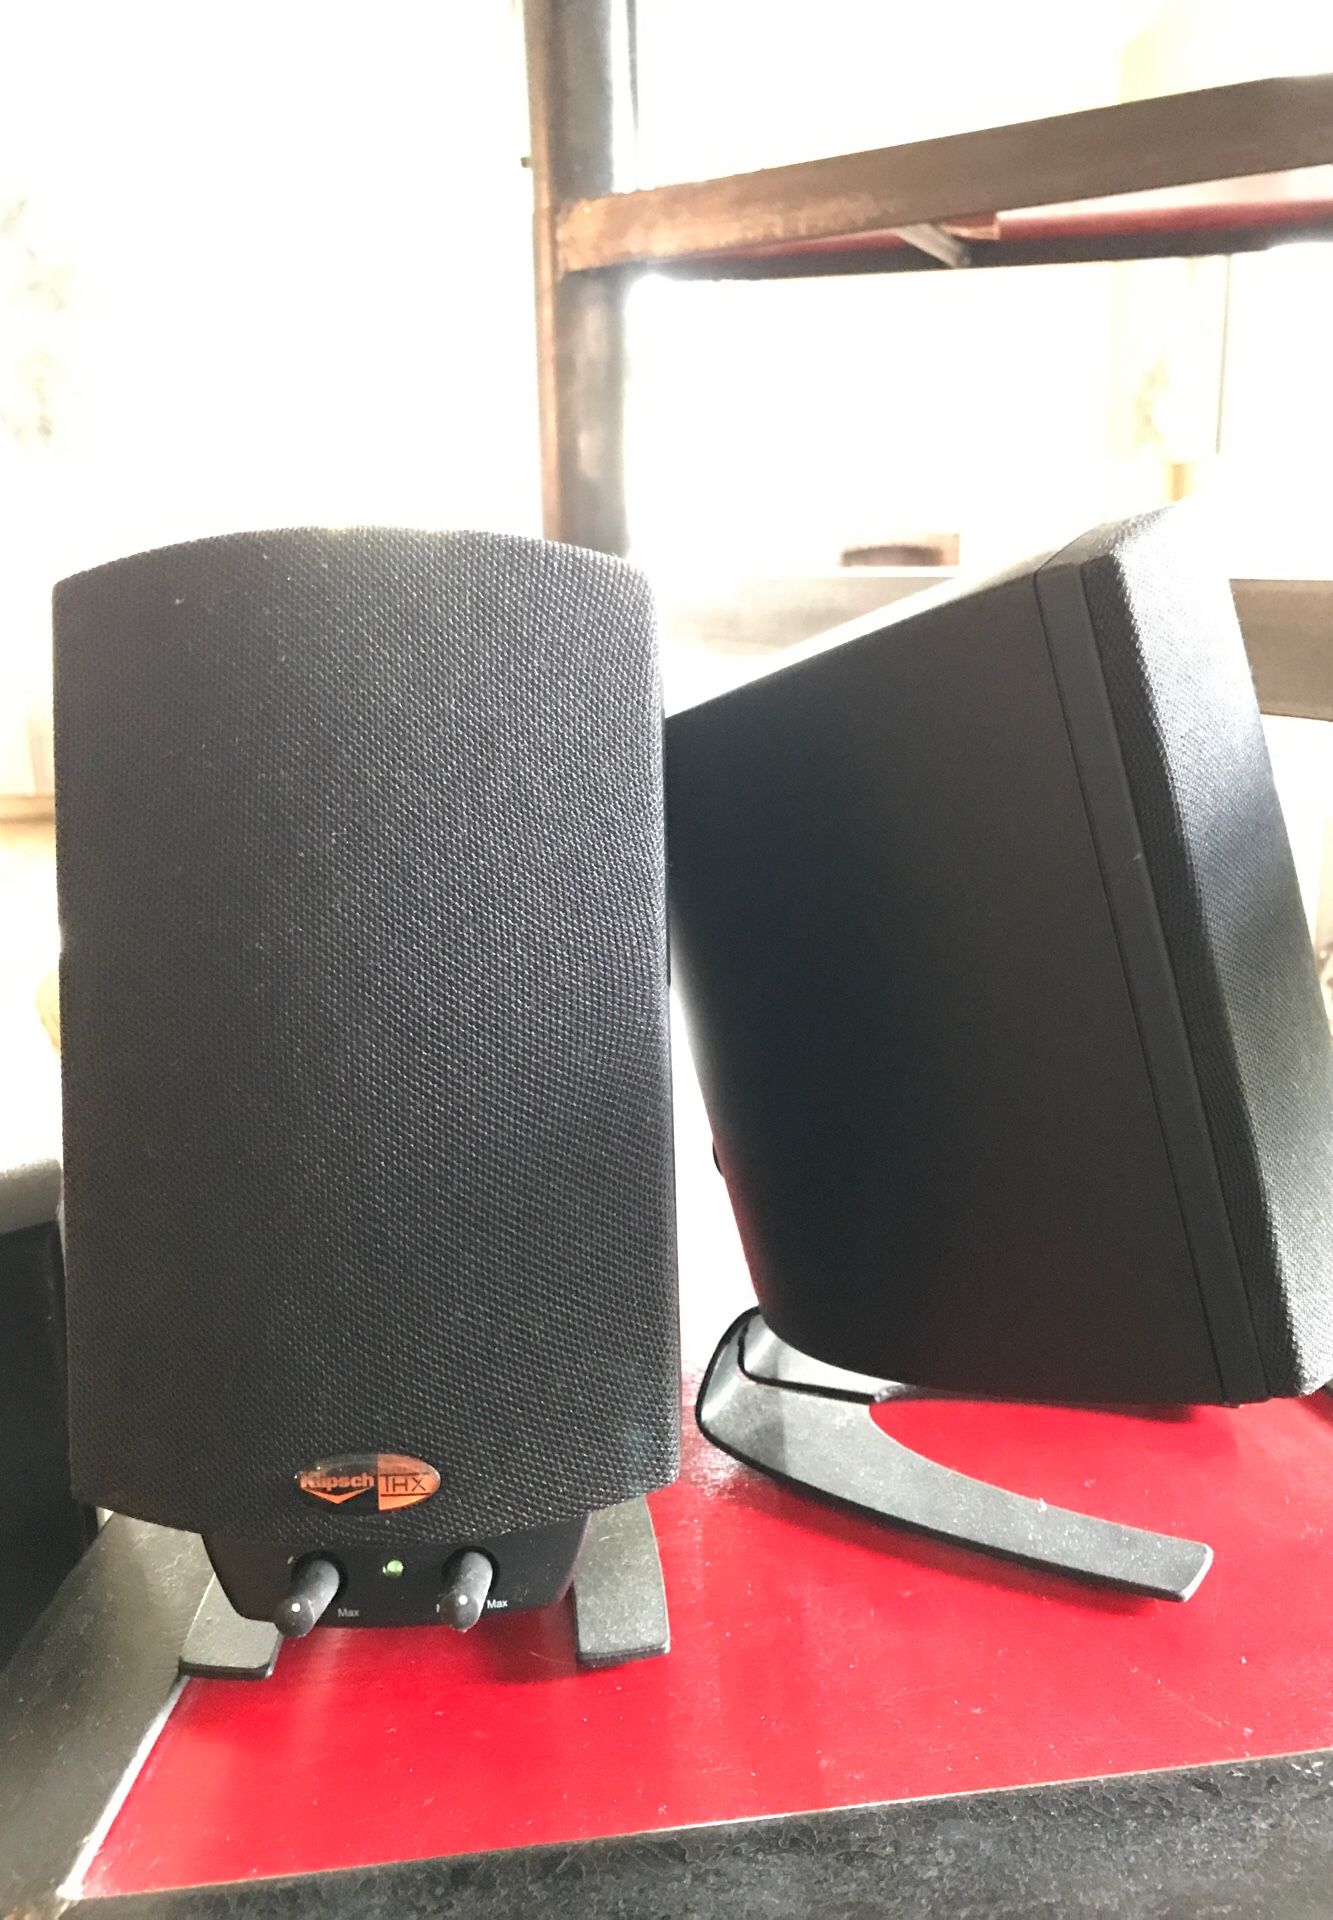 Klipsch Pro Media V2.1 computer speakers.